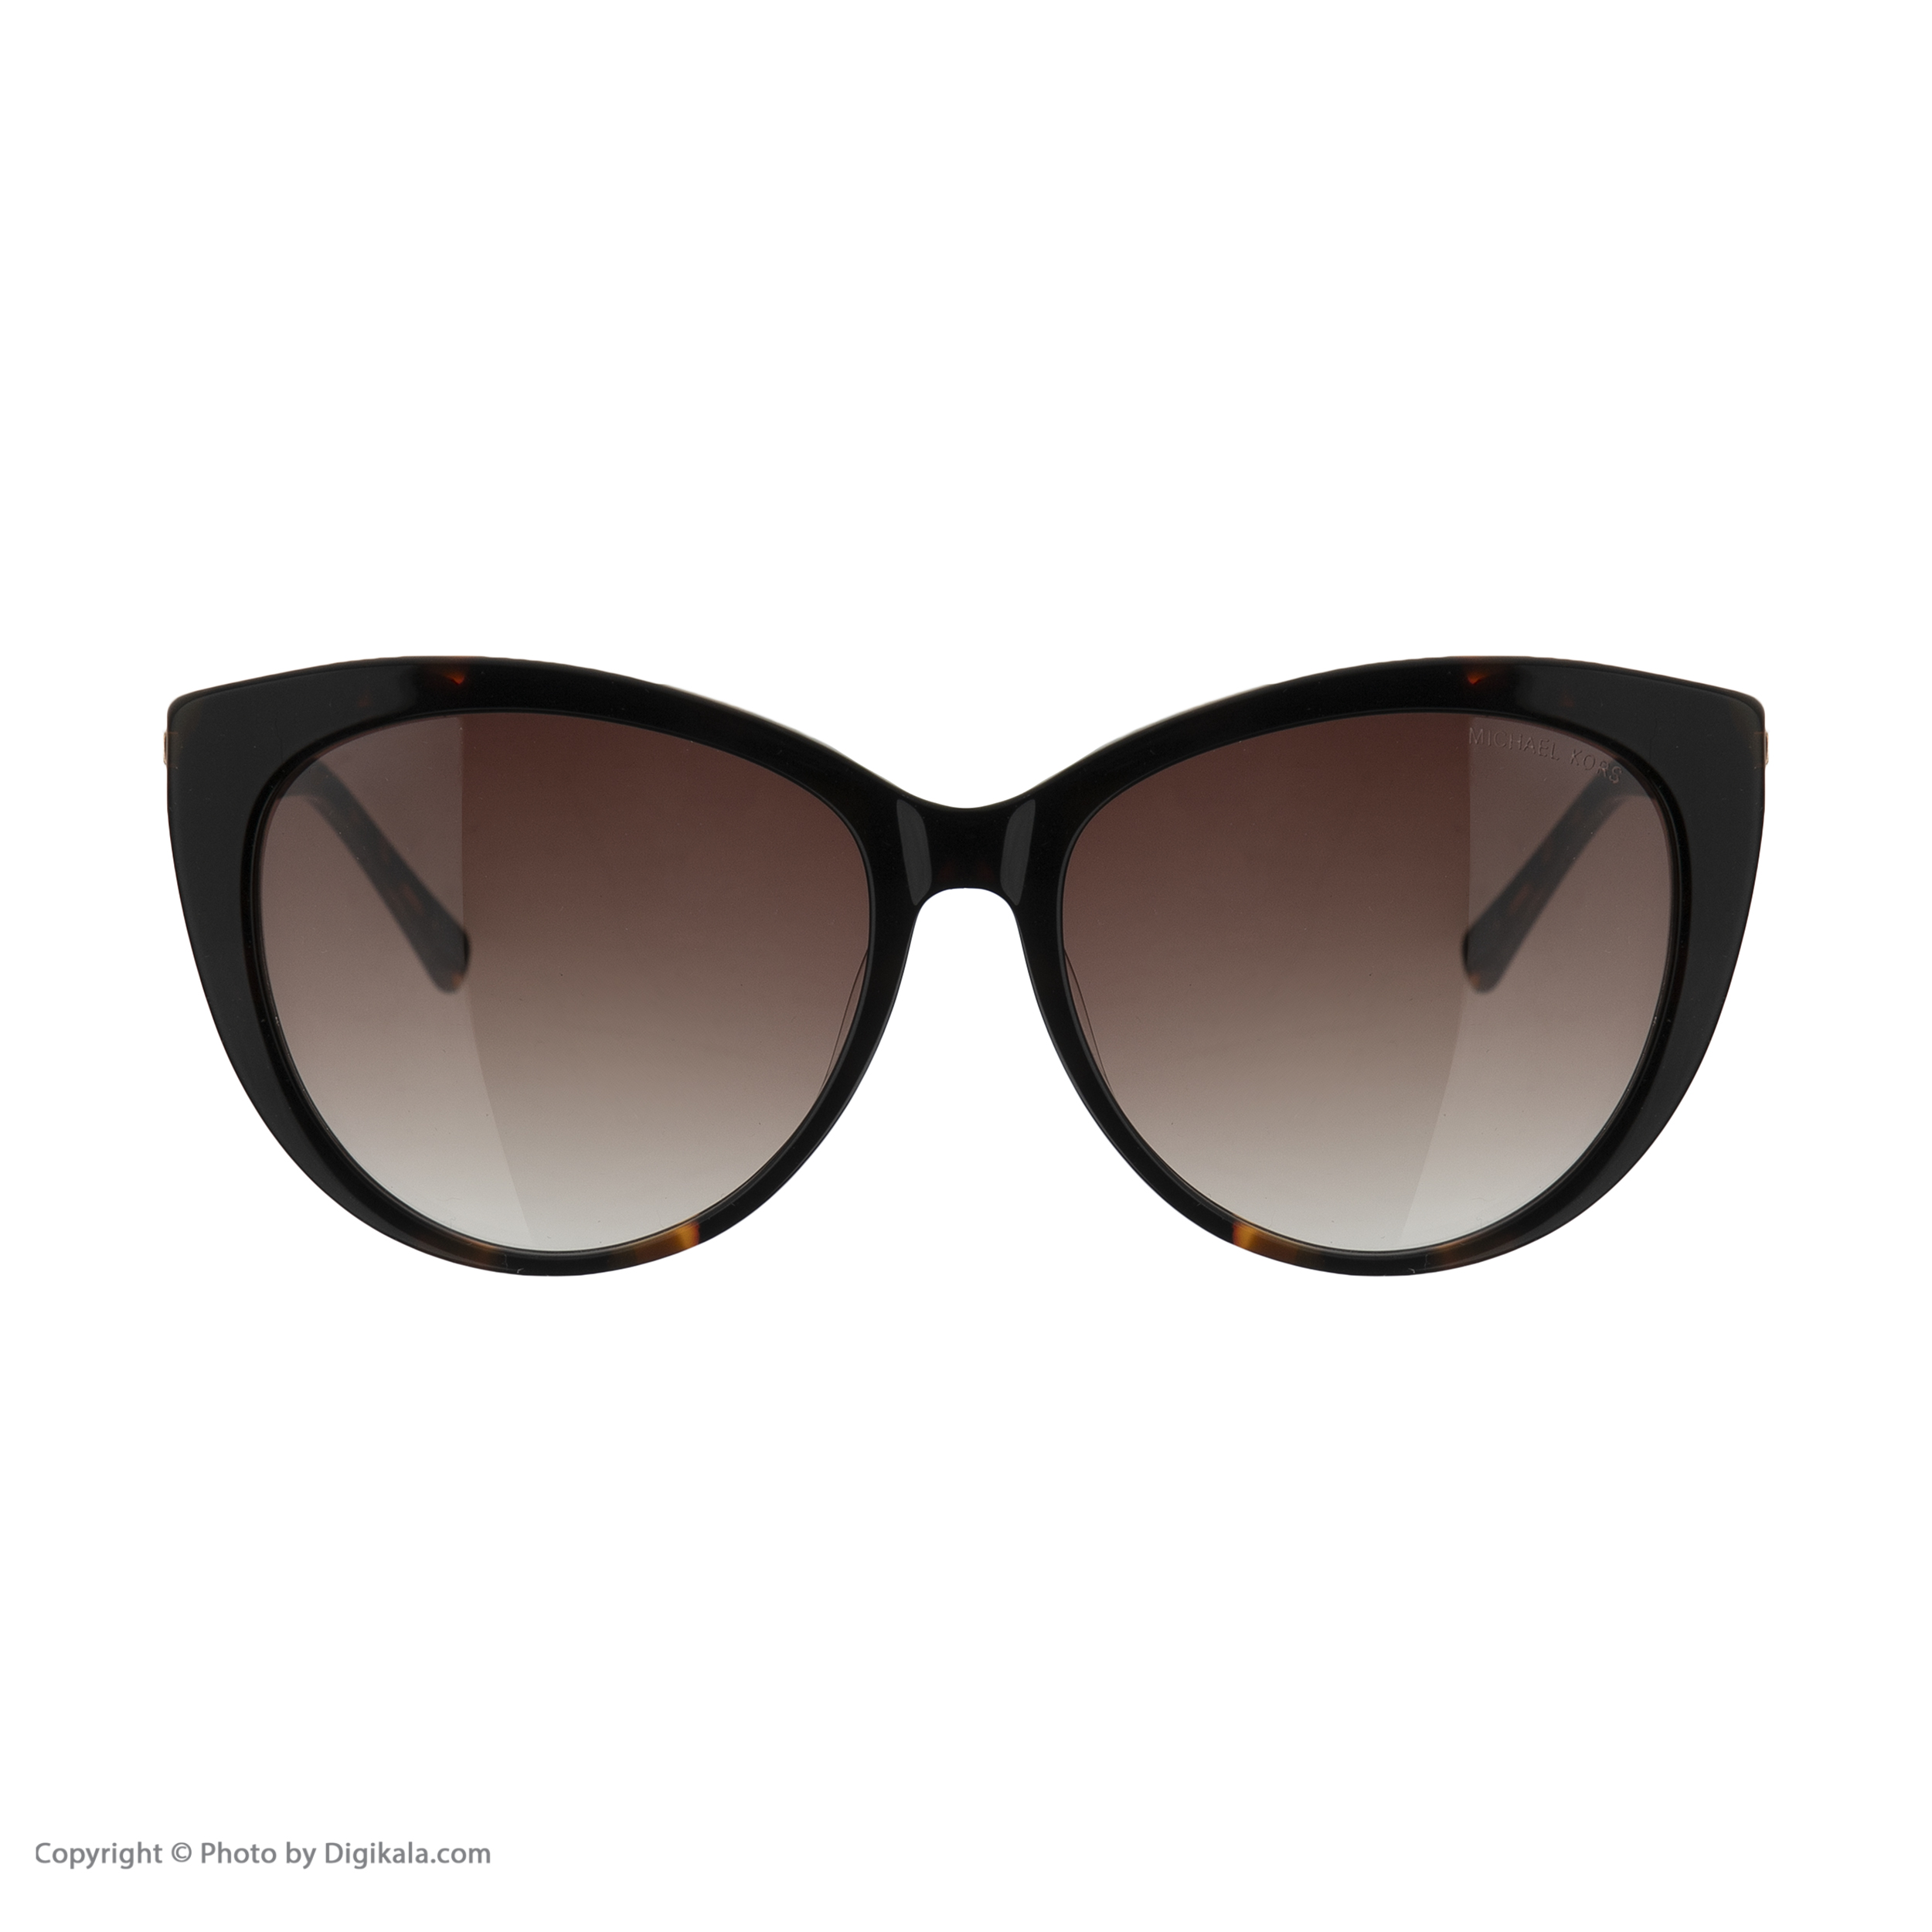  عینک آفتابی زنانه مایکل کورس مدل 200 -  - 5